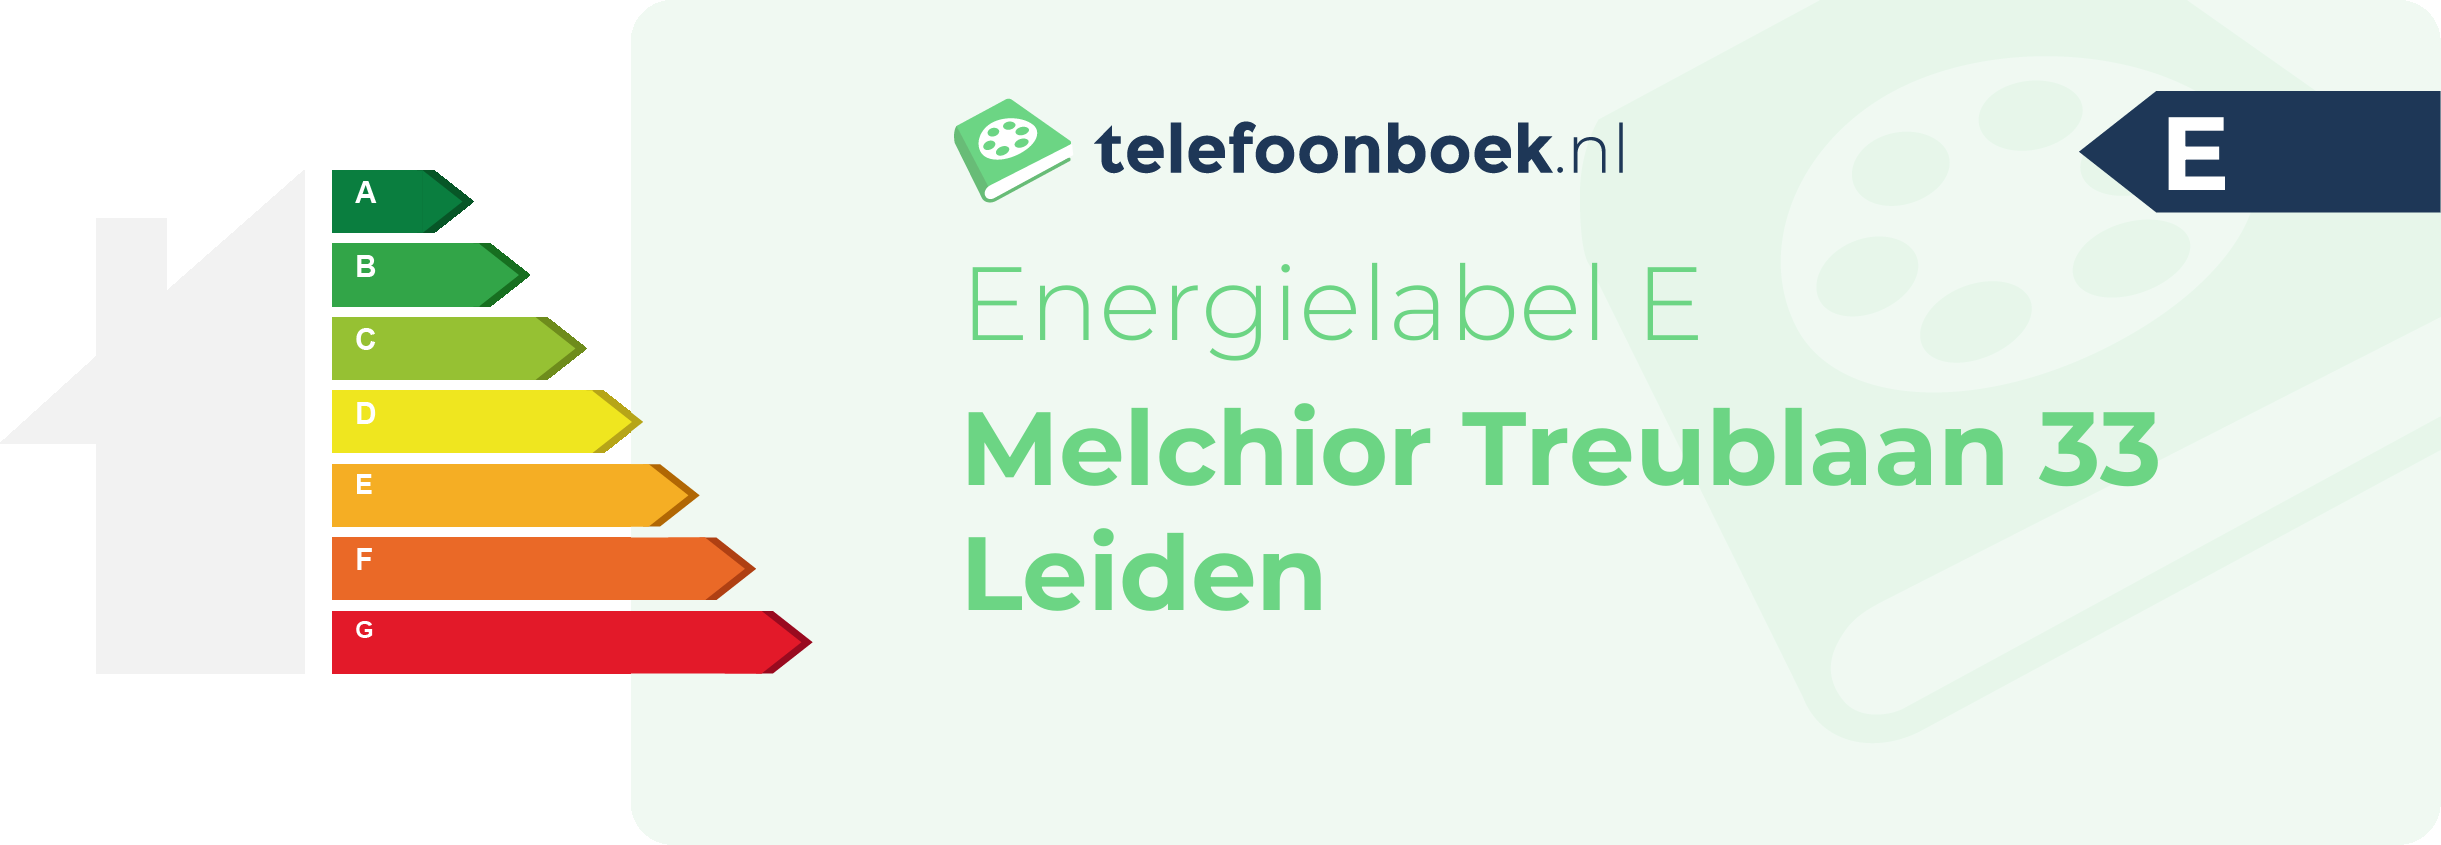 Energielabel Melchior Treublaan 33 Leiden